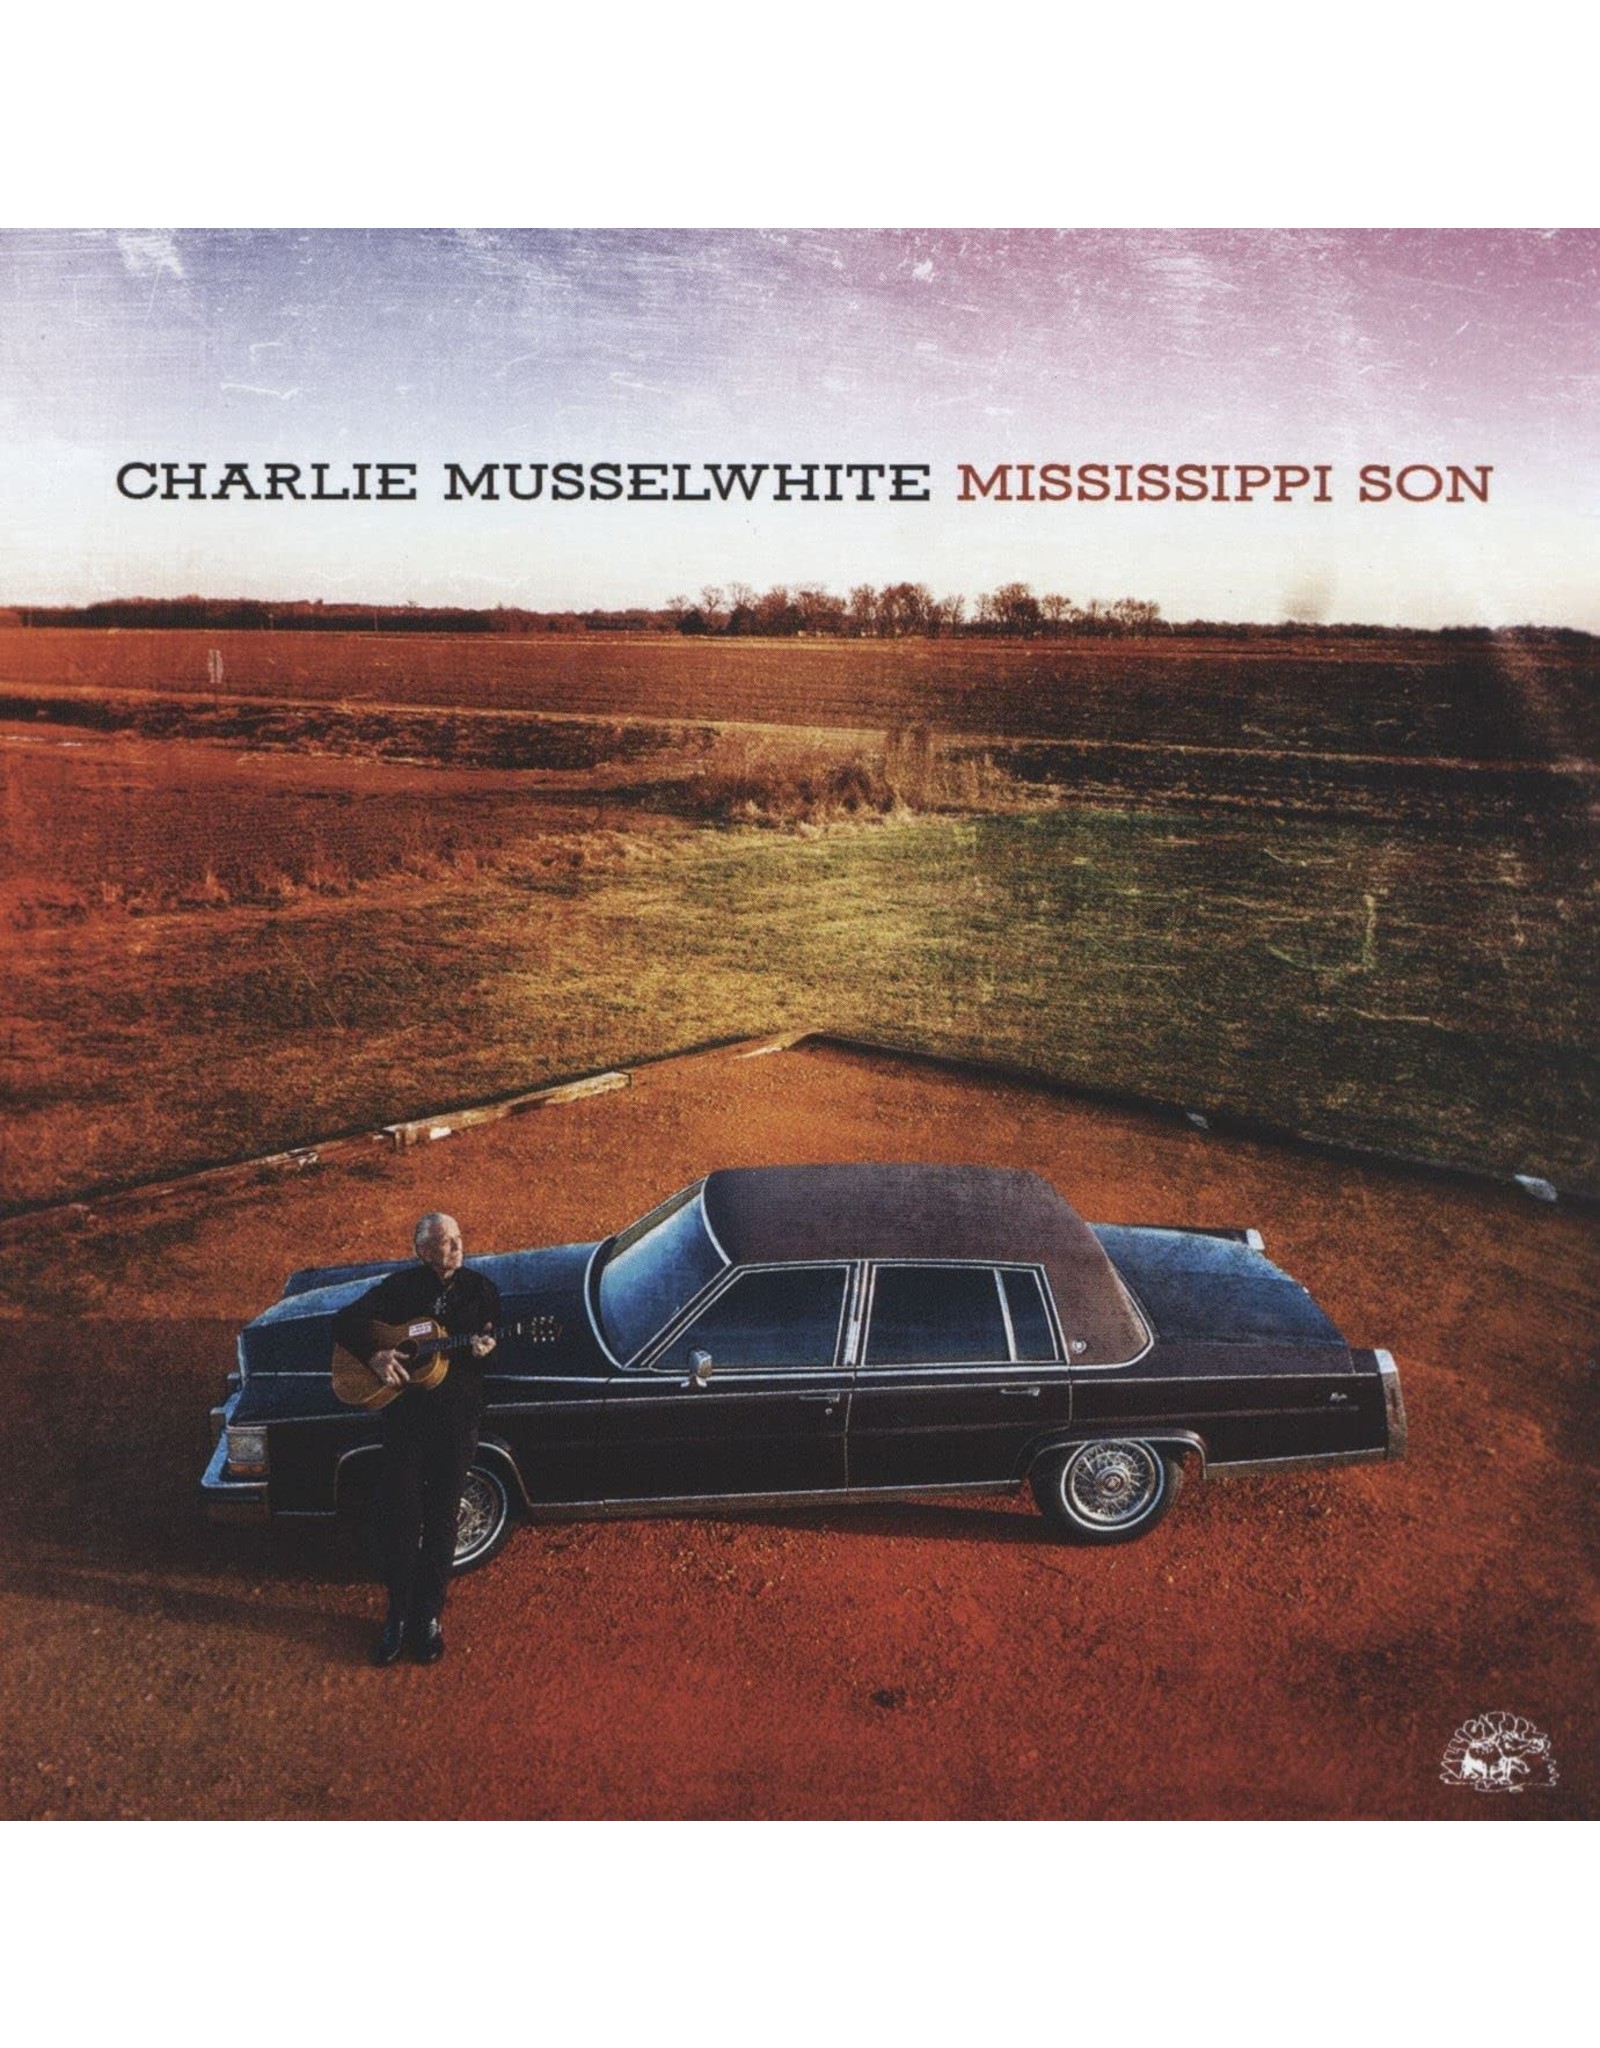 Charlie Musselwhite - Mississippi Son (Blue Vinyl)